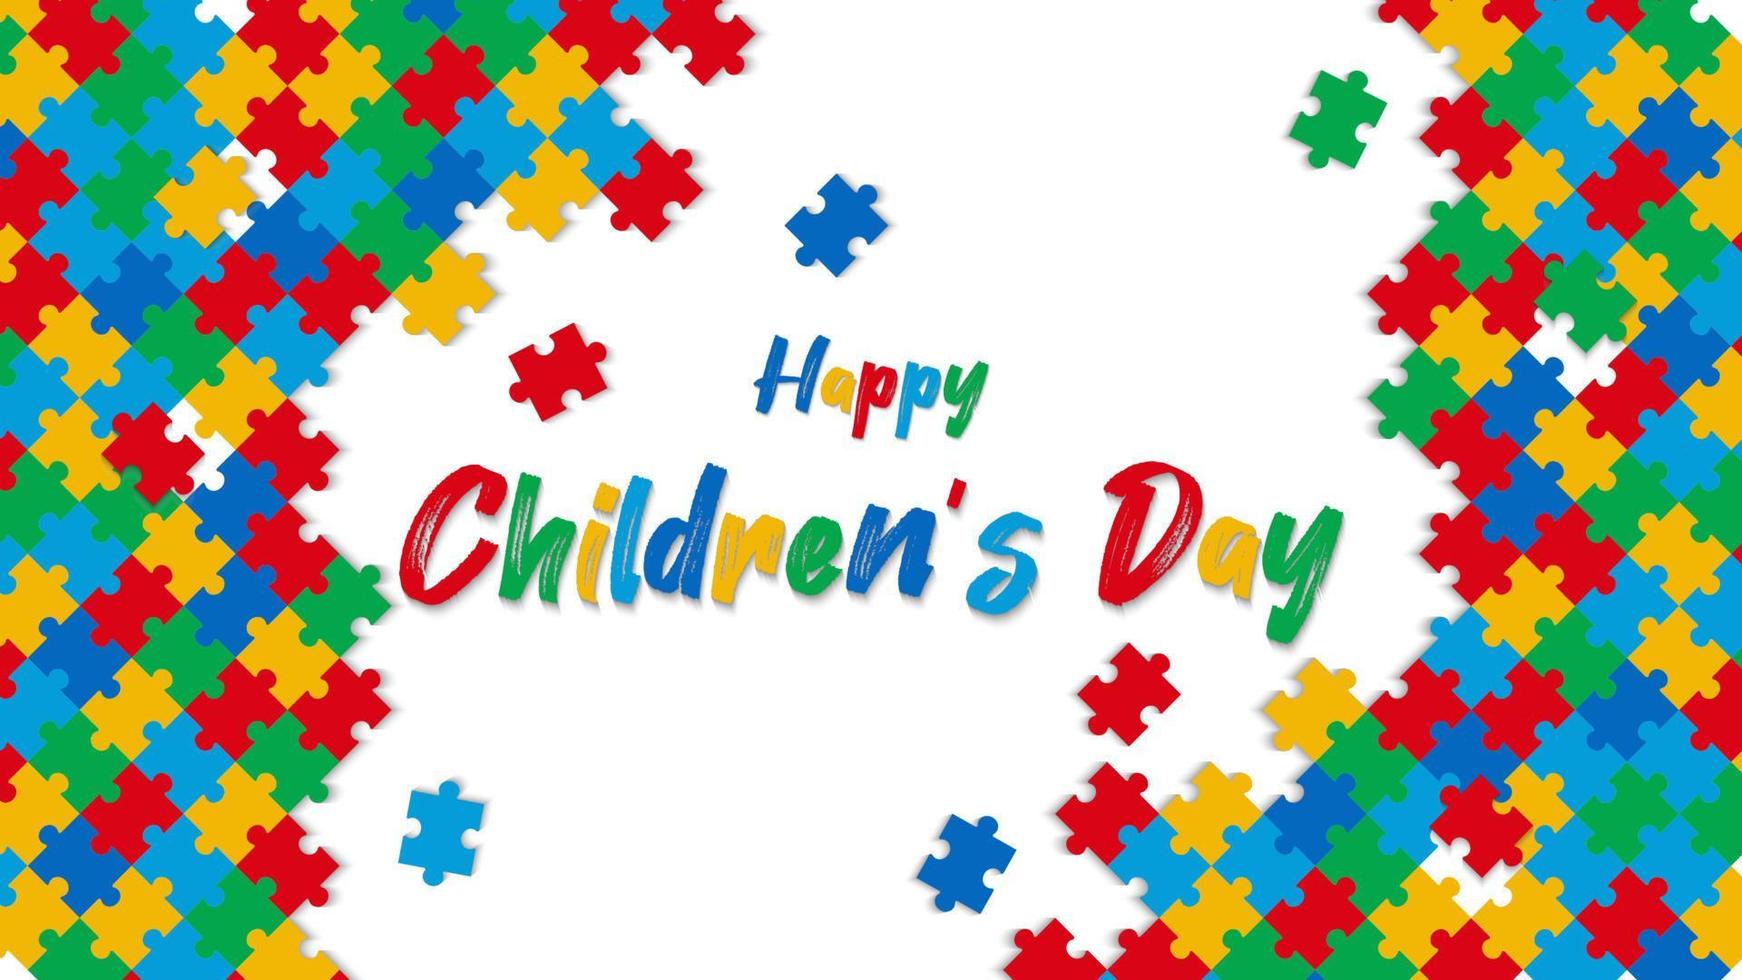 gelukkige kinderdagachtergrond met puzzels en schrijven van kleurrijke penselen vector